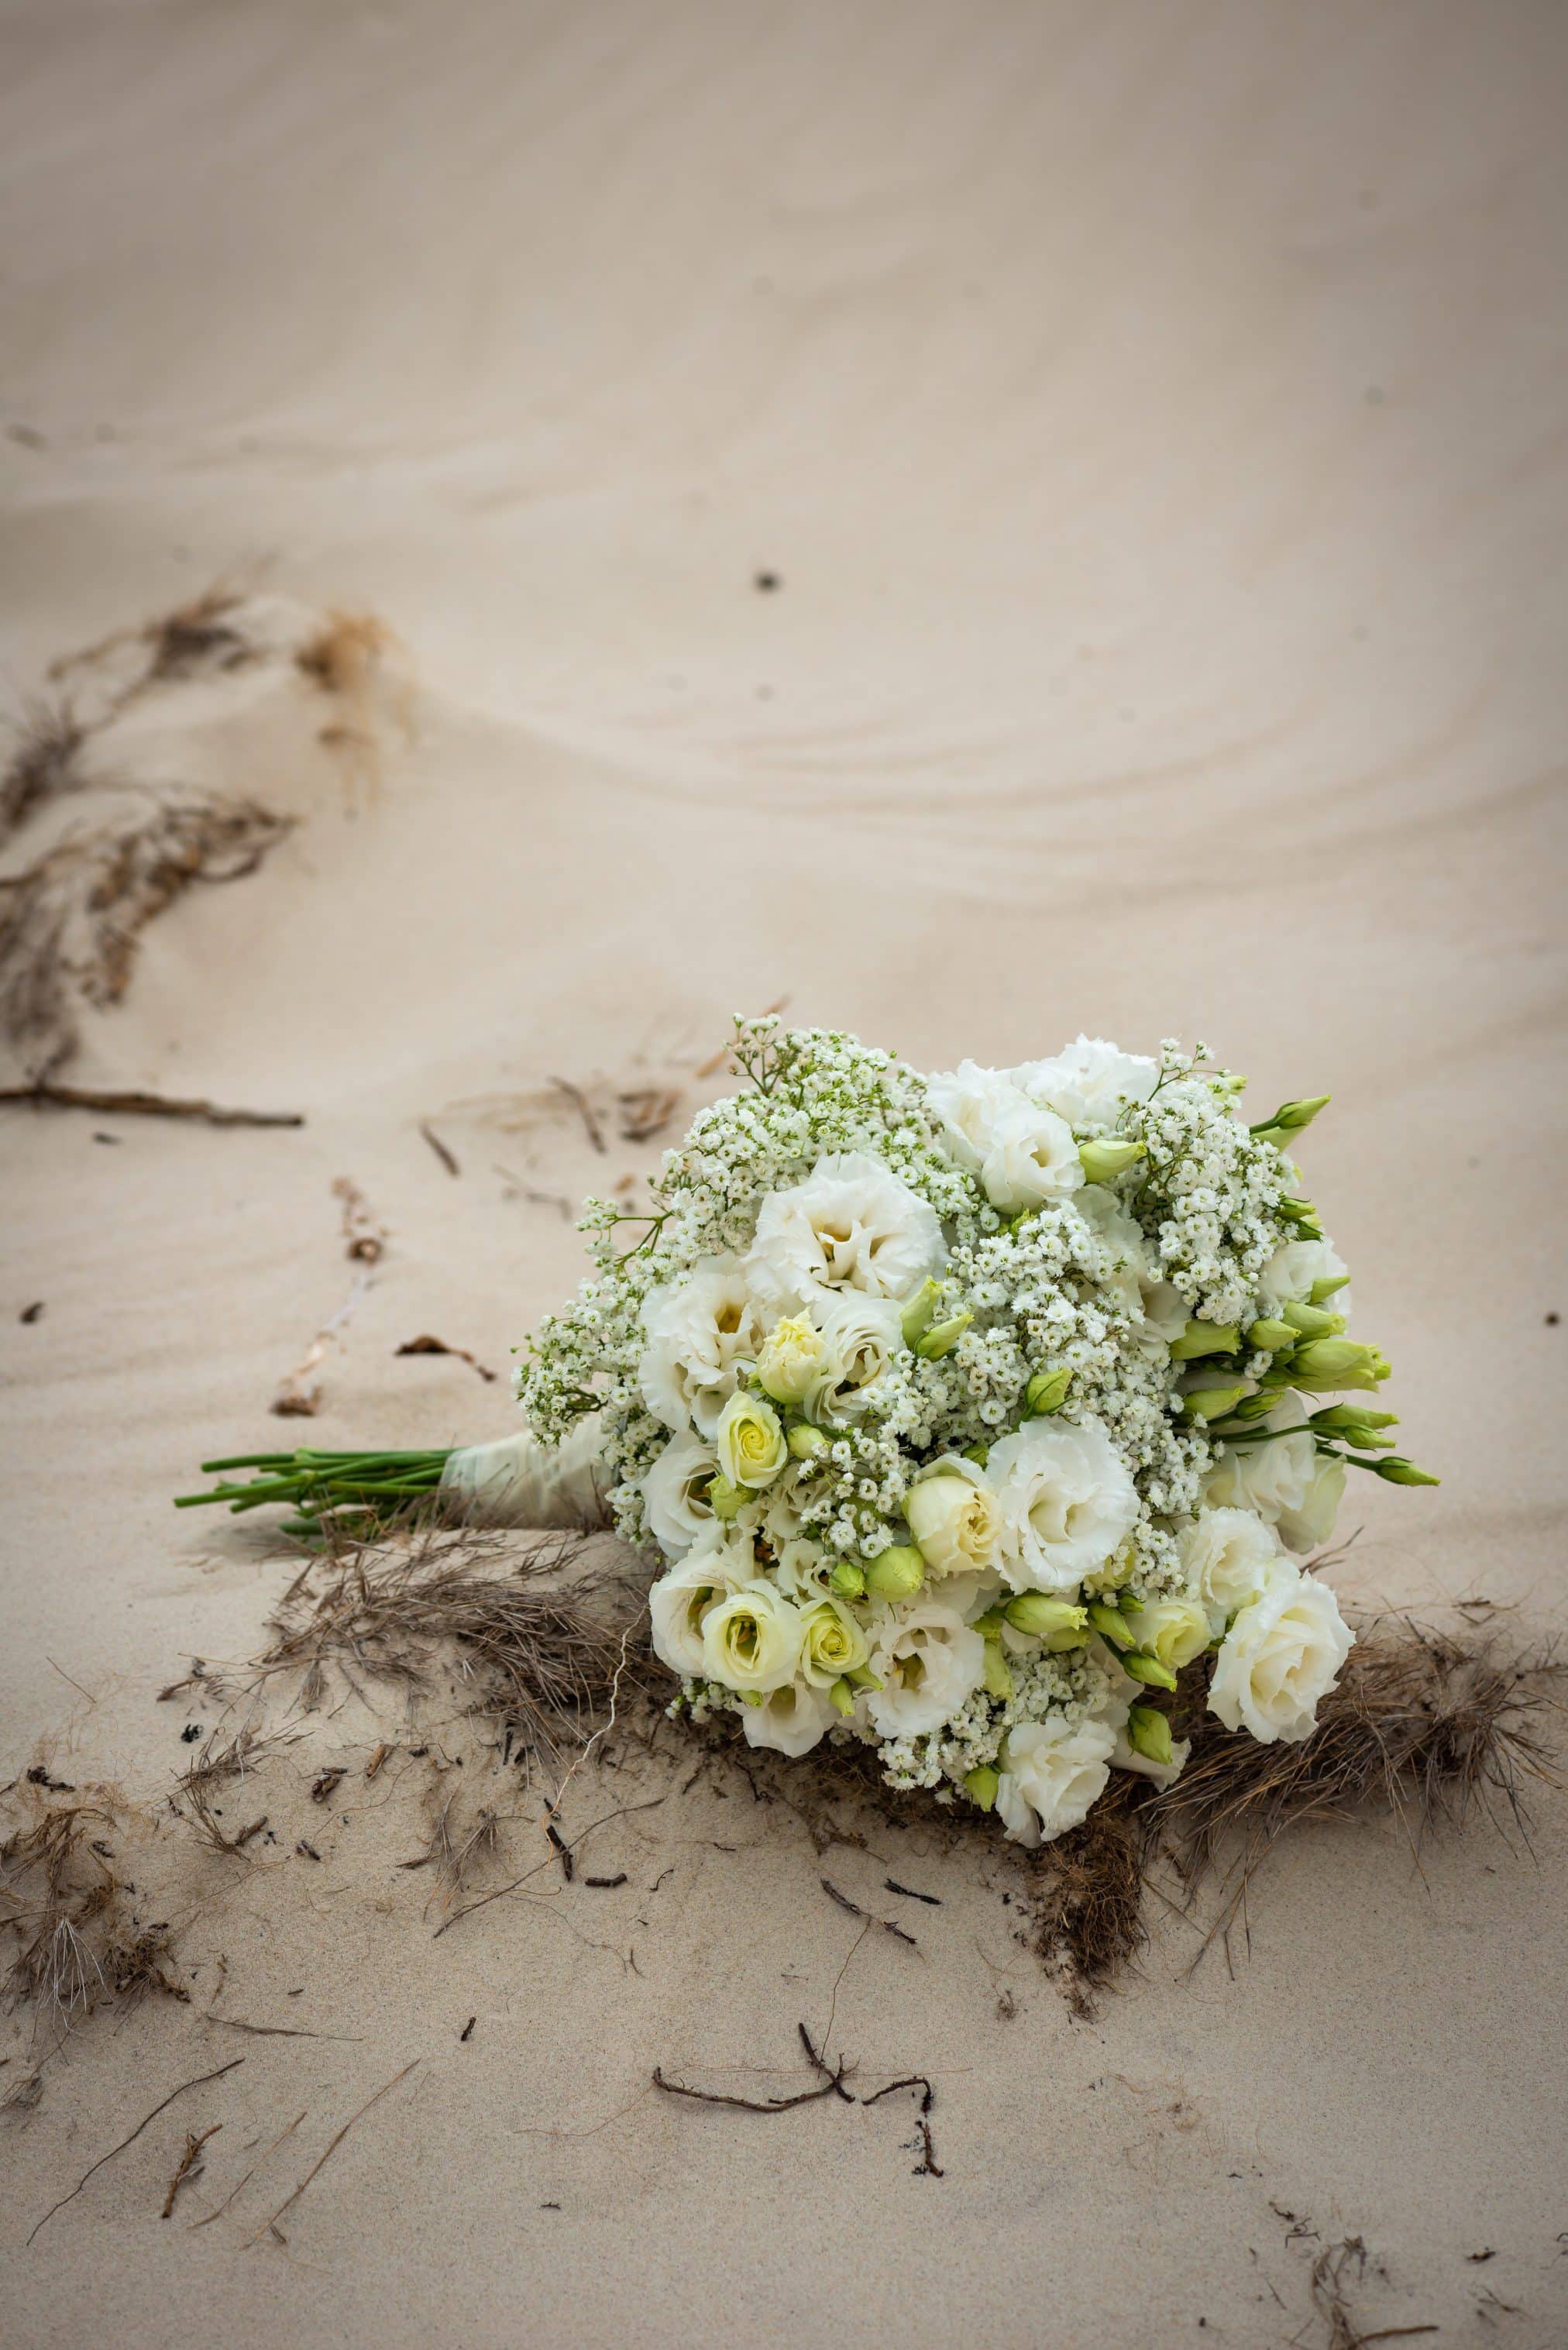 Lisianthus-Eustoma-Wedding-Flower-Arrangement-Bride-Bouquet-Bridal Bouquet-White-Green-Romantic